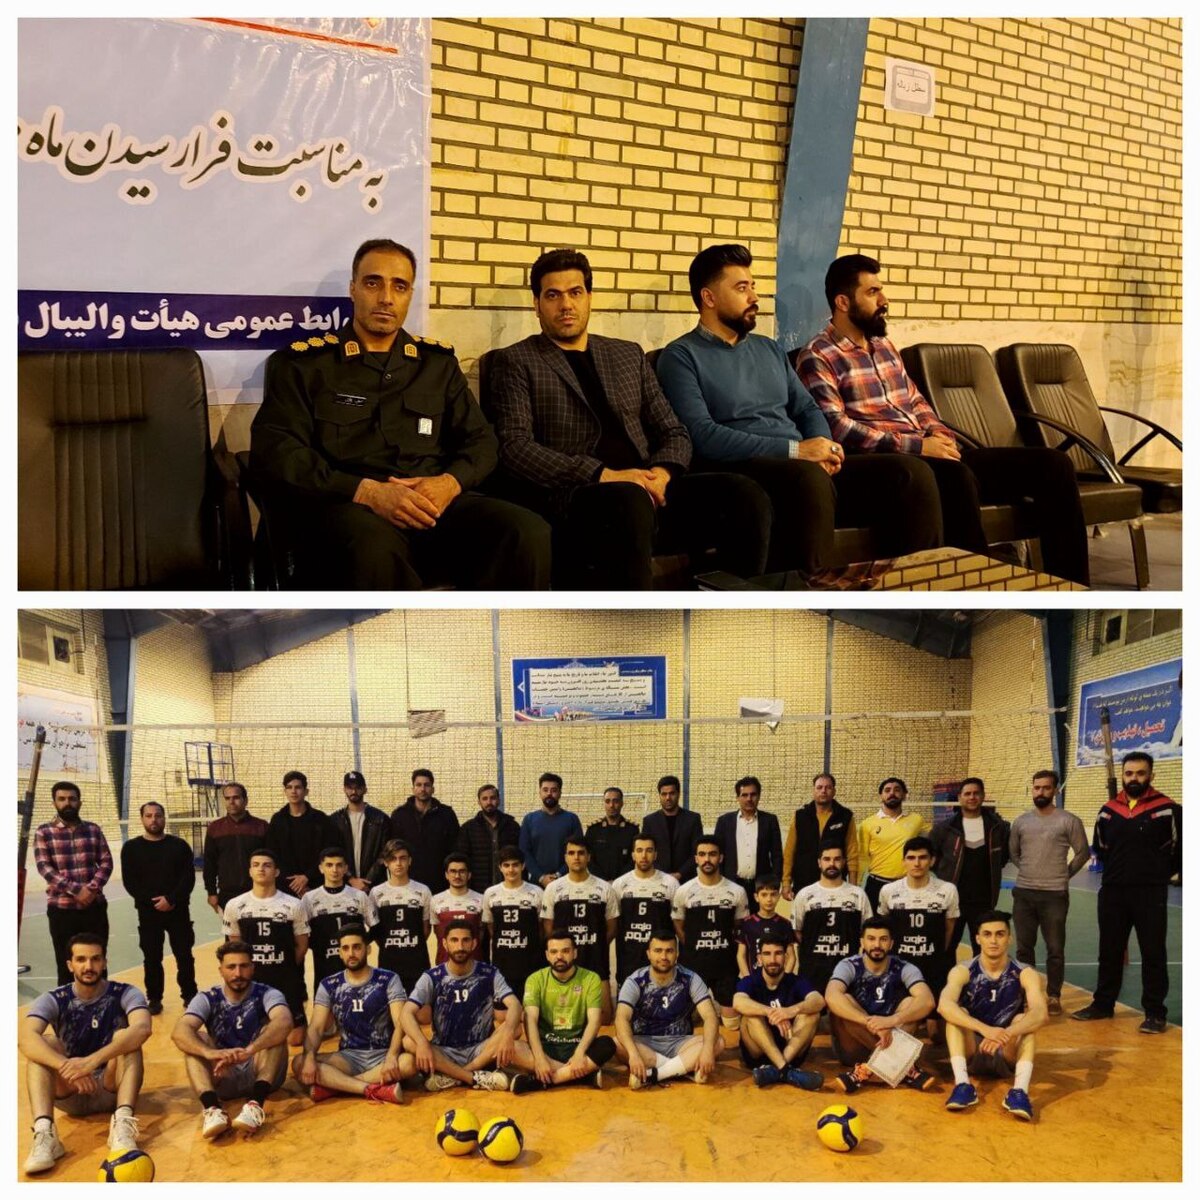 تیم سرابله قهرمان مسابقات والیبال جام رمضان بسیج شد